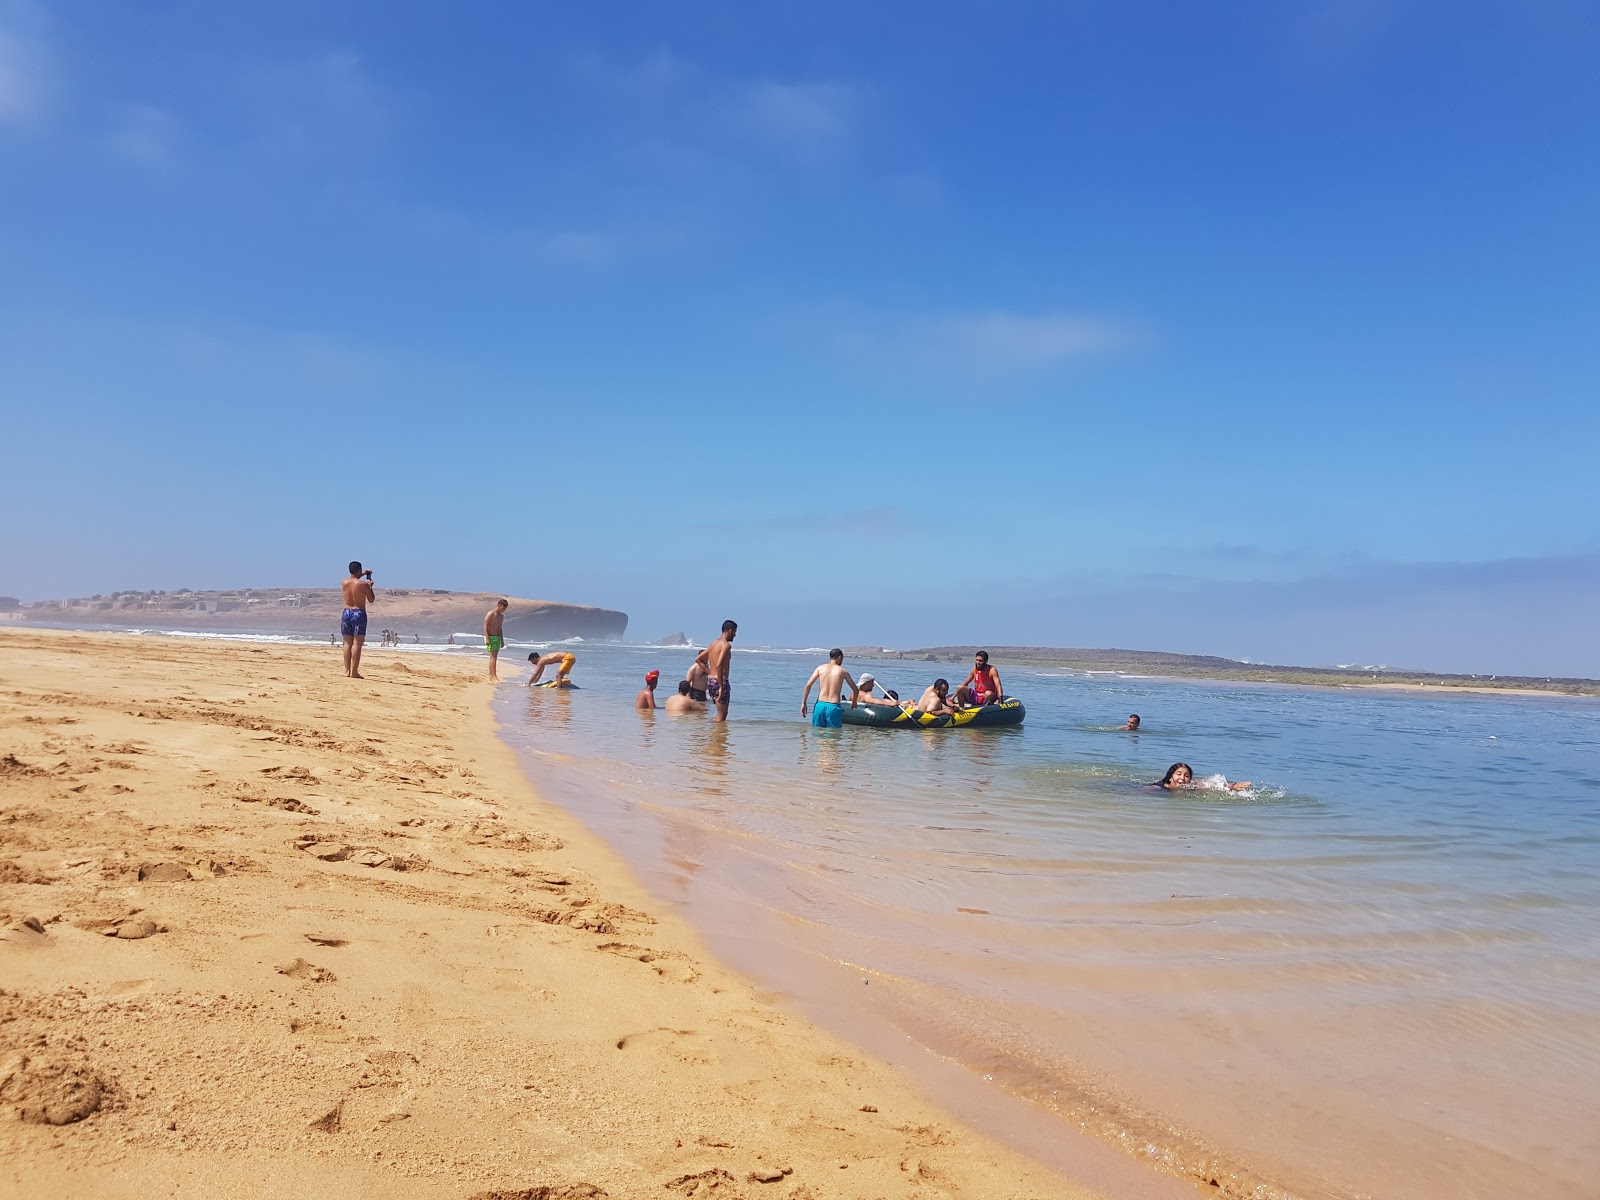 Photo of Sidi Belkheir Beach shaty sydy balkhyr with small multi bays